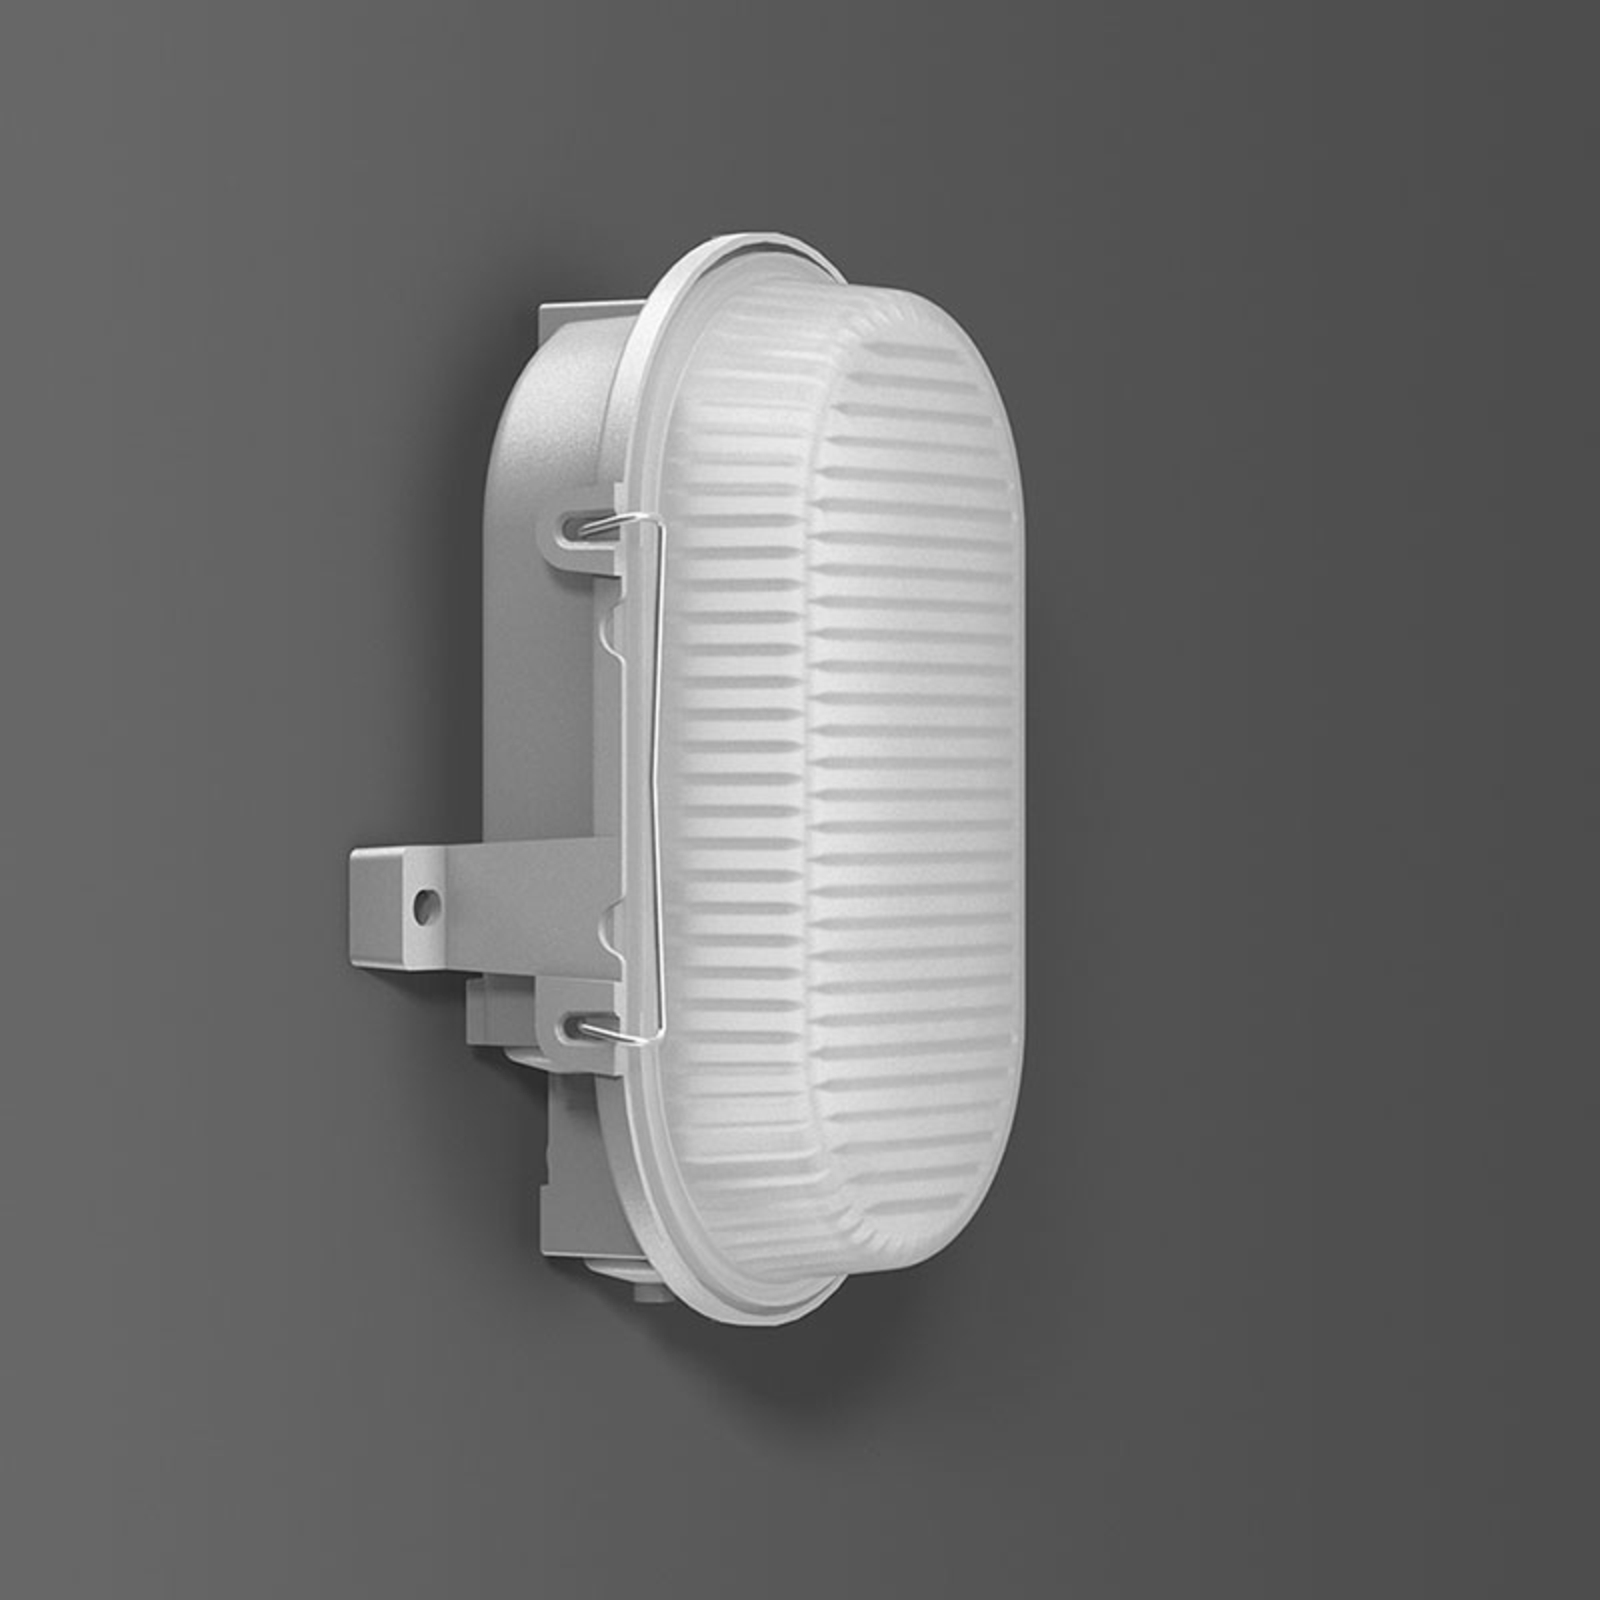 RZB Alu-Standard LED wall light, oval, IP66